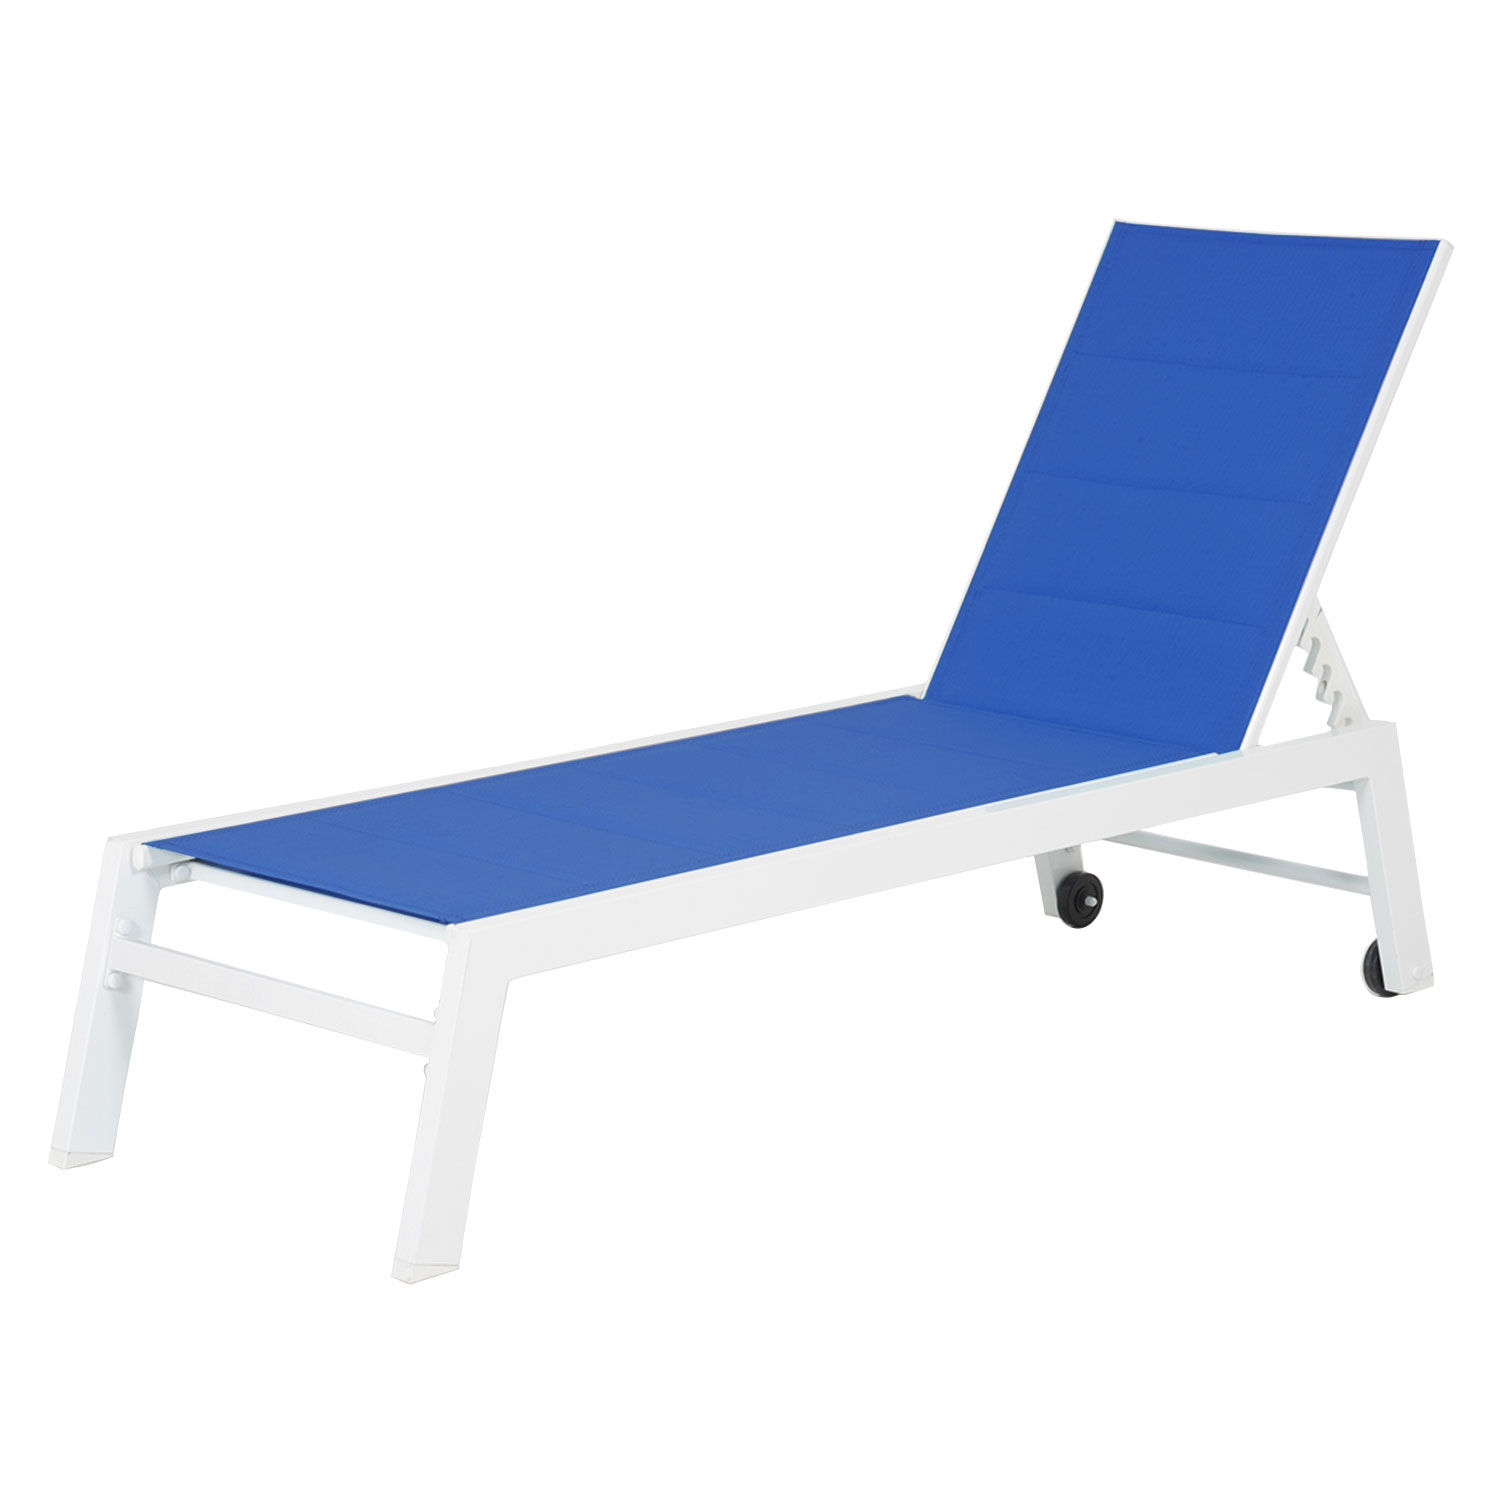 BARBADOS ligstoel in blauw textilene - wit aluminium